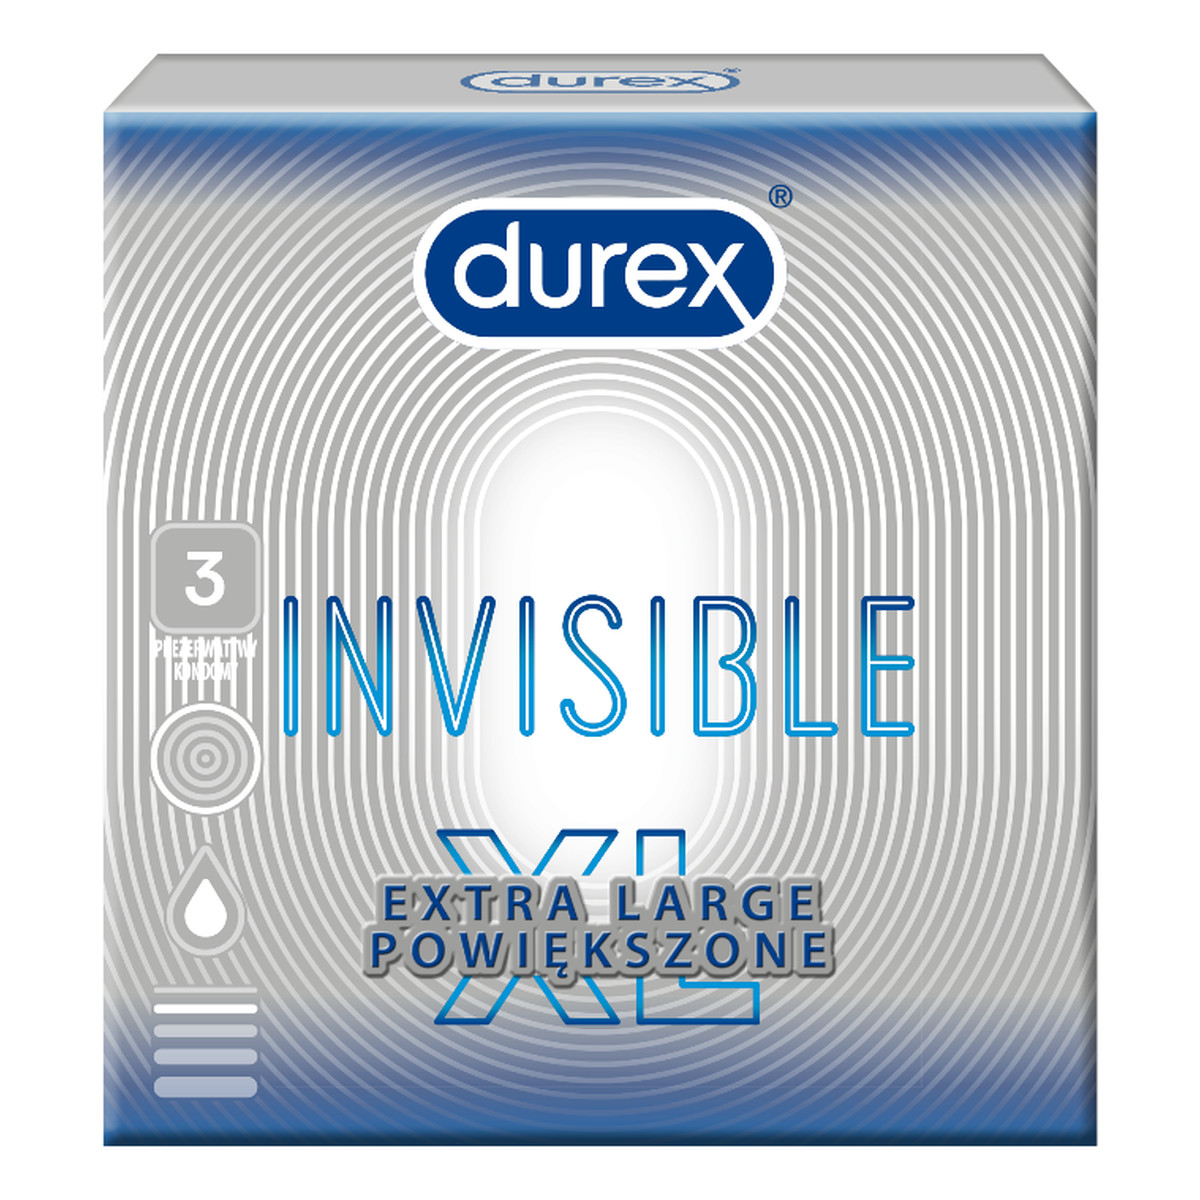 Durex Invisible extra large prezerwatywy powiększone 3szt